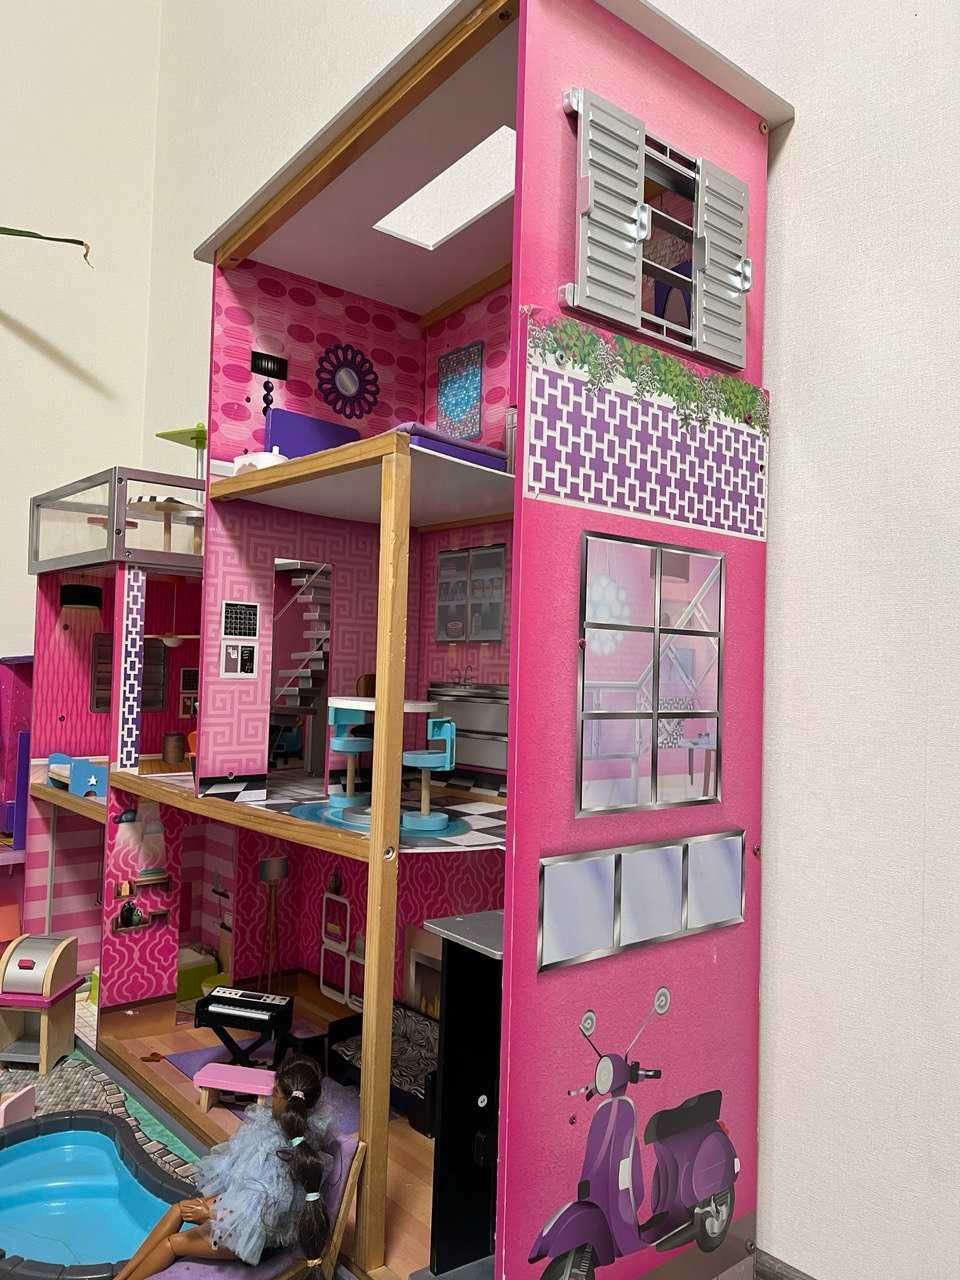 Ляльковий будинок kidkraft дім для барбі дом барби с бассеином